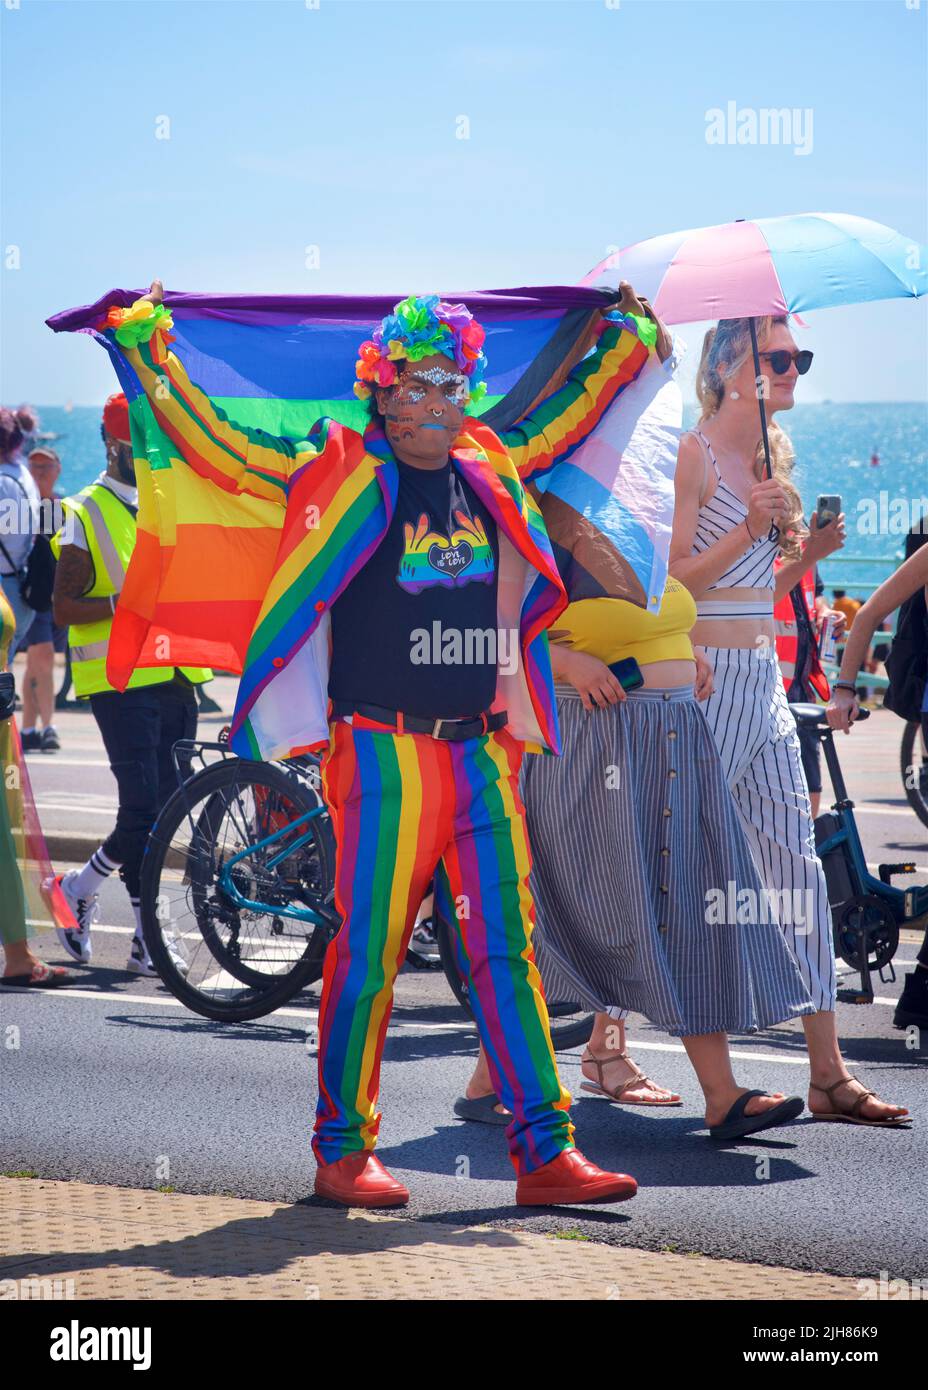 Trans Pride Brighton & Hove Protesta marcha a lo largo del paseo marítimo, Brighton & Hove. Un participante se detiene para tomar una fotografía. 16 de julio de 2022. Crédito: J. Marshall / Alamy Live News Foto de stock